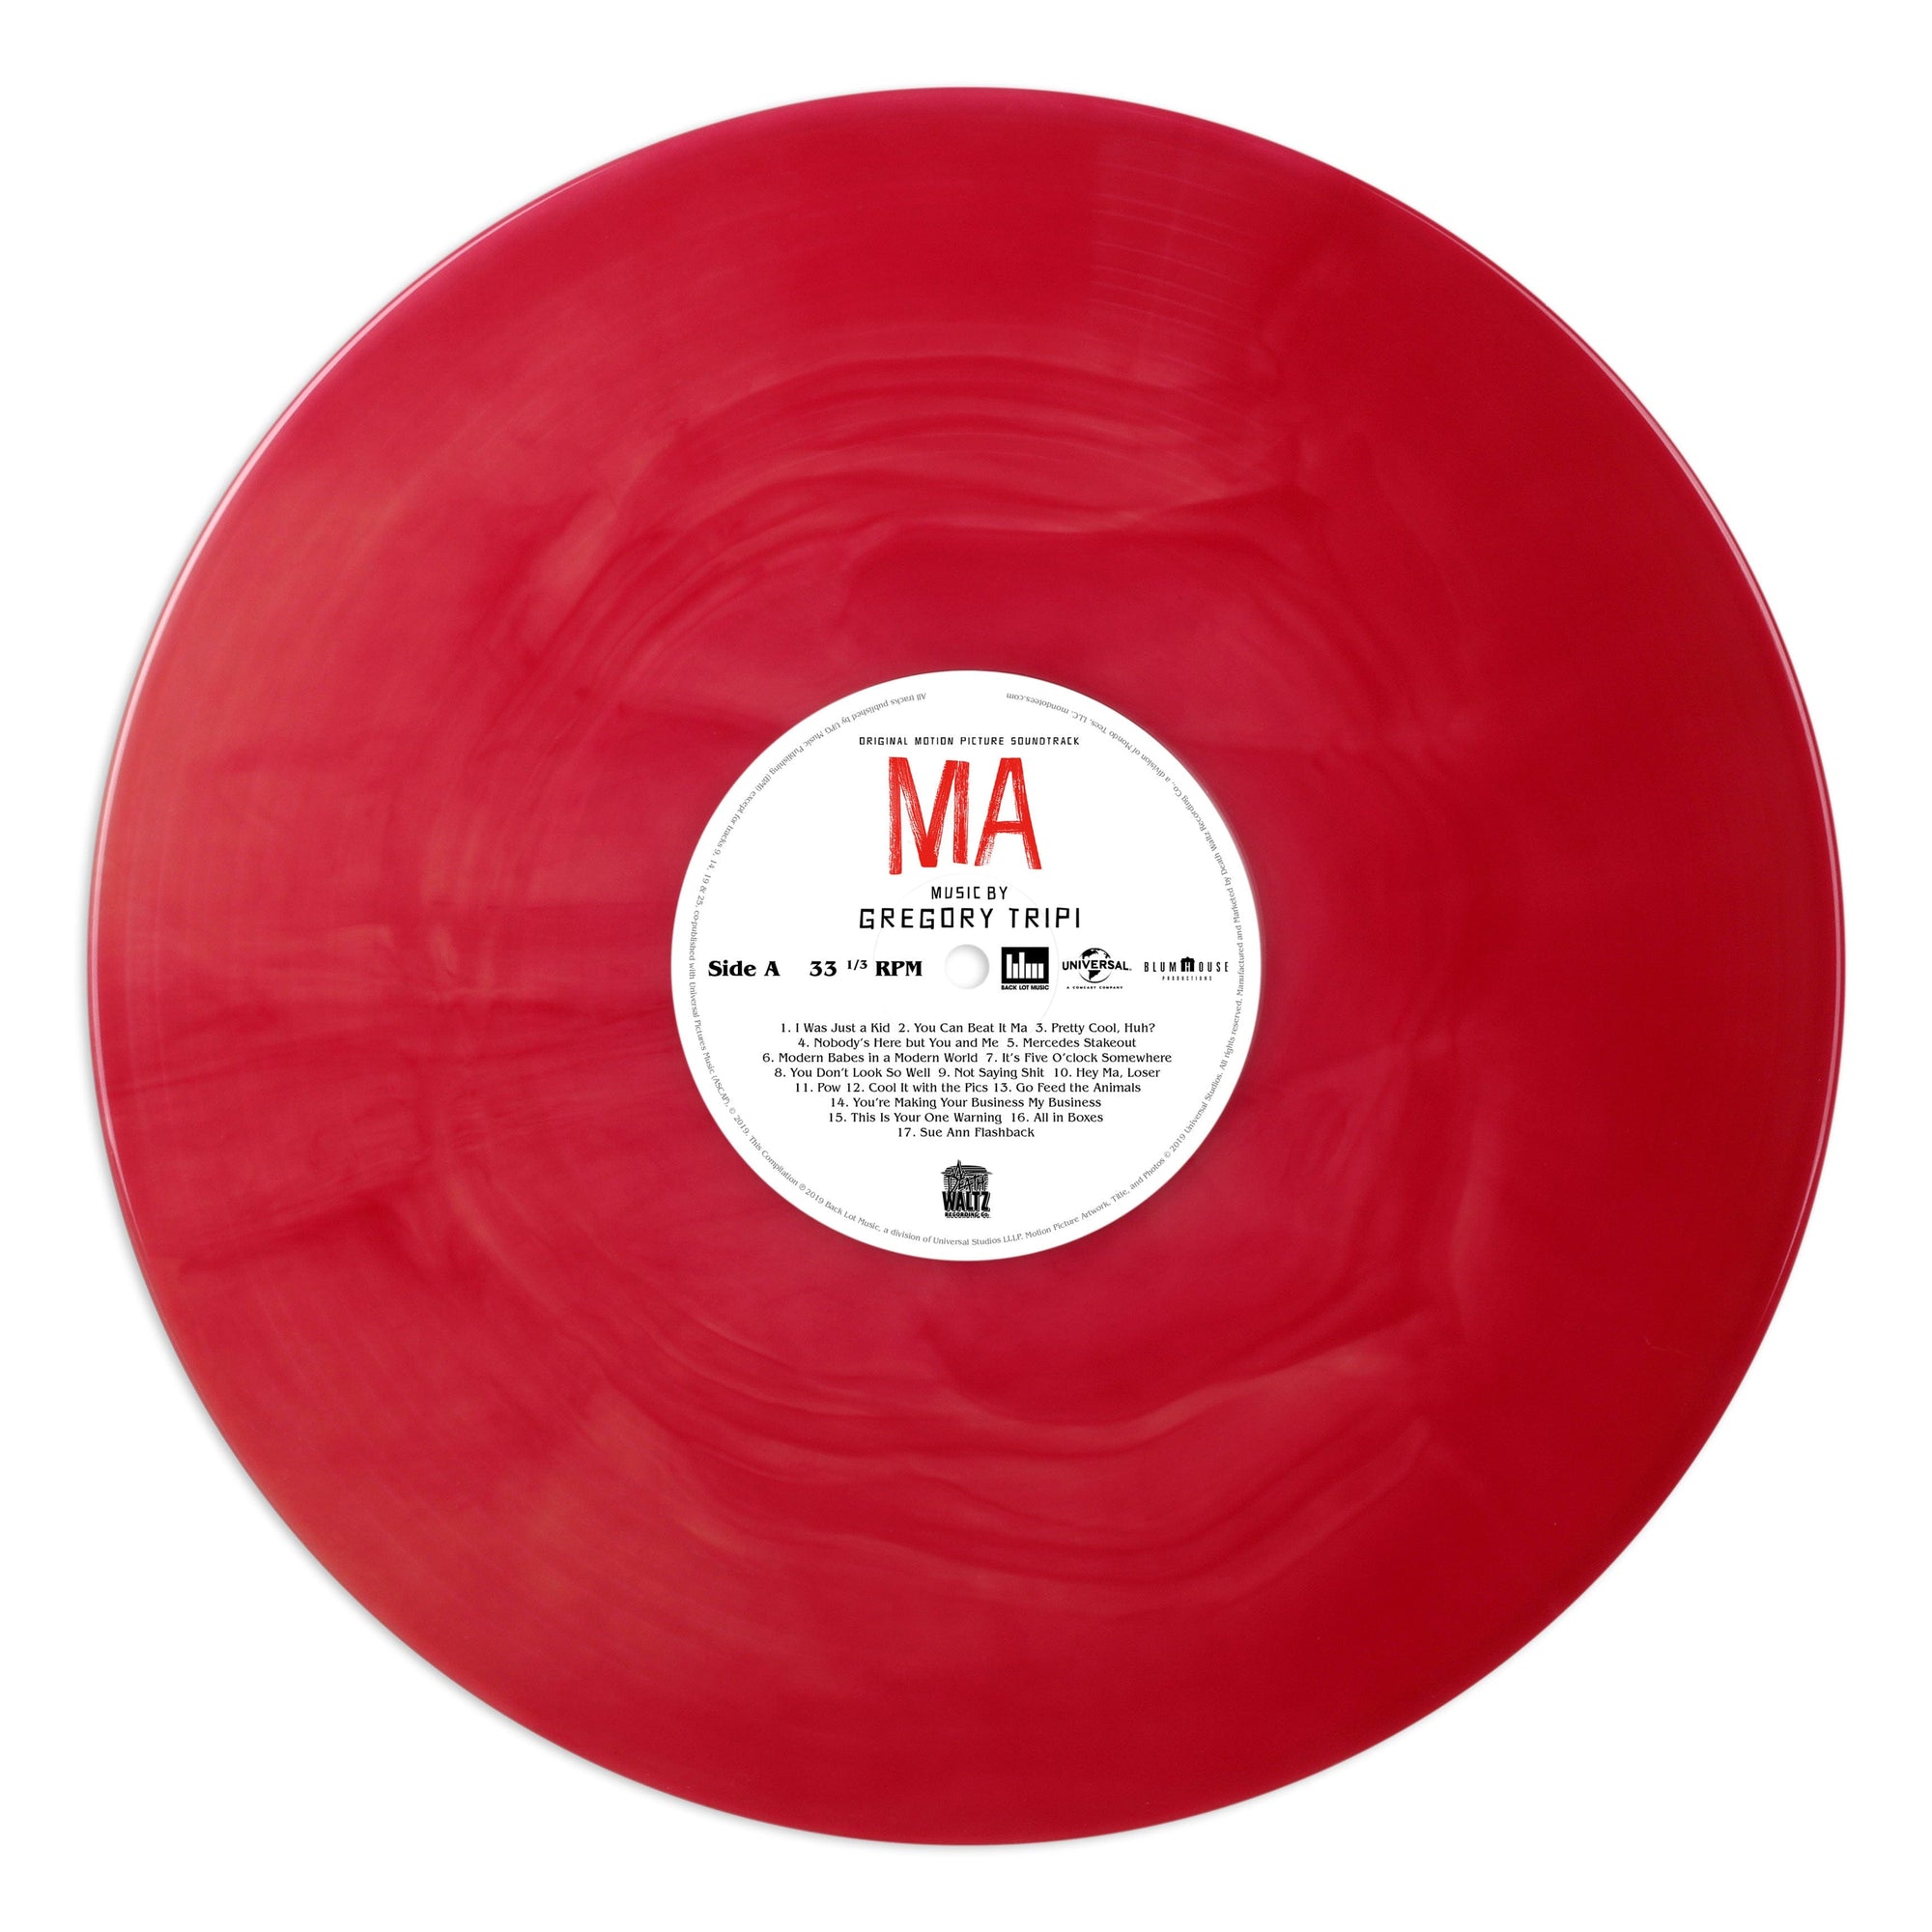 MA – Original Motion Picture Soundtrack LP – Mondo